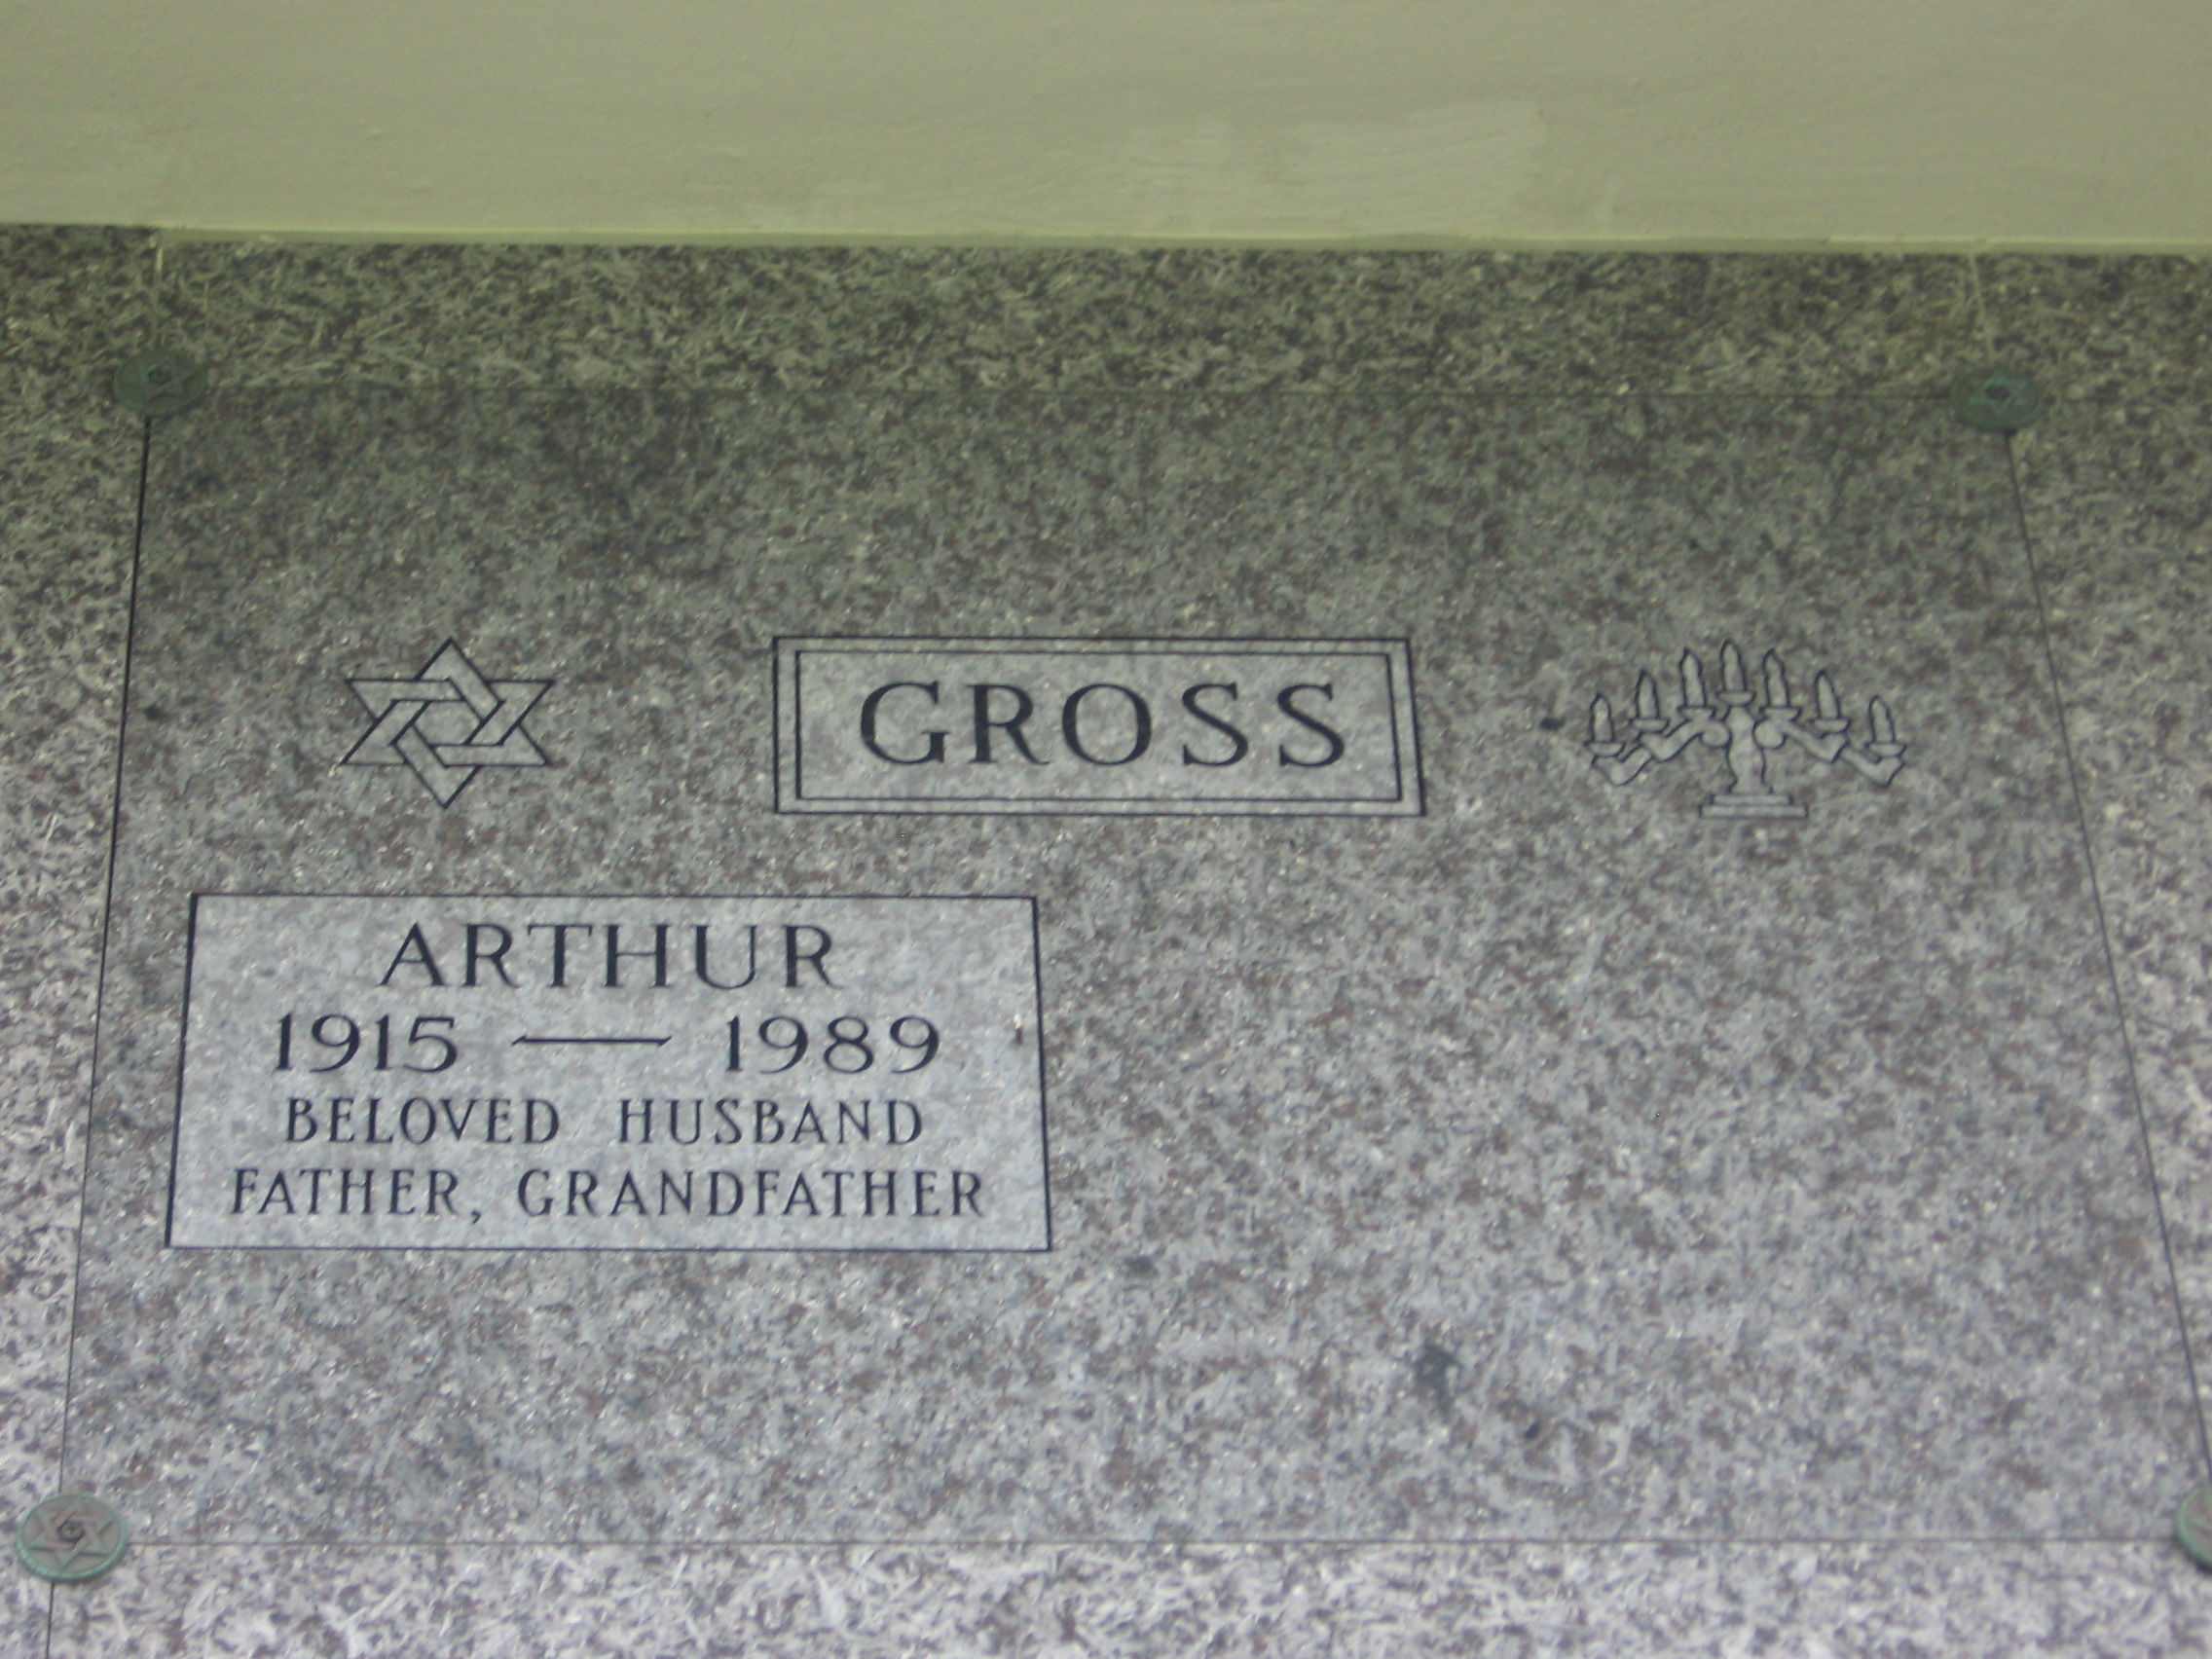 Arthur Gross